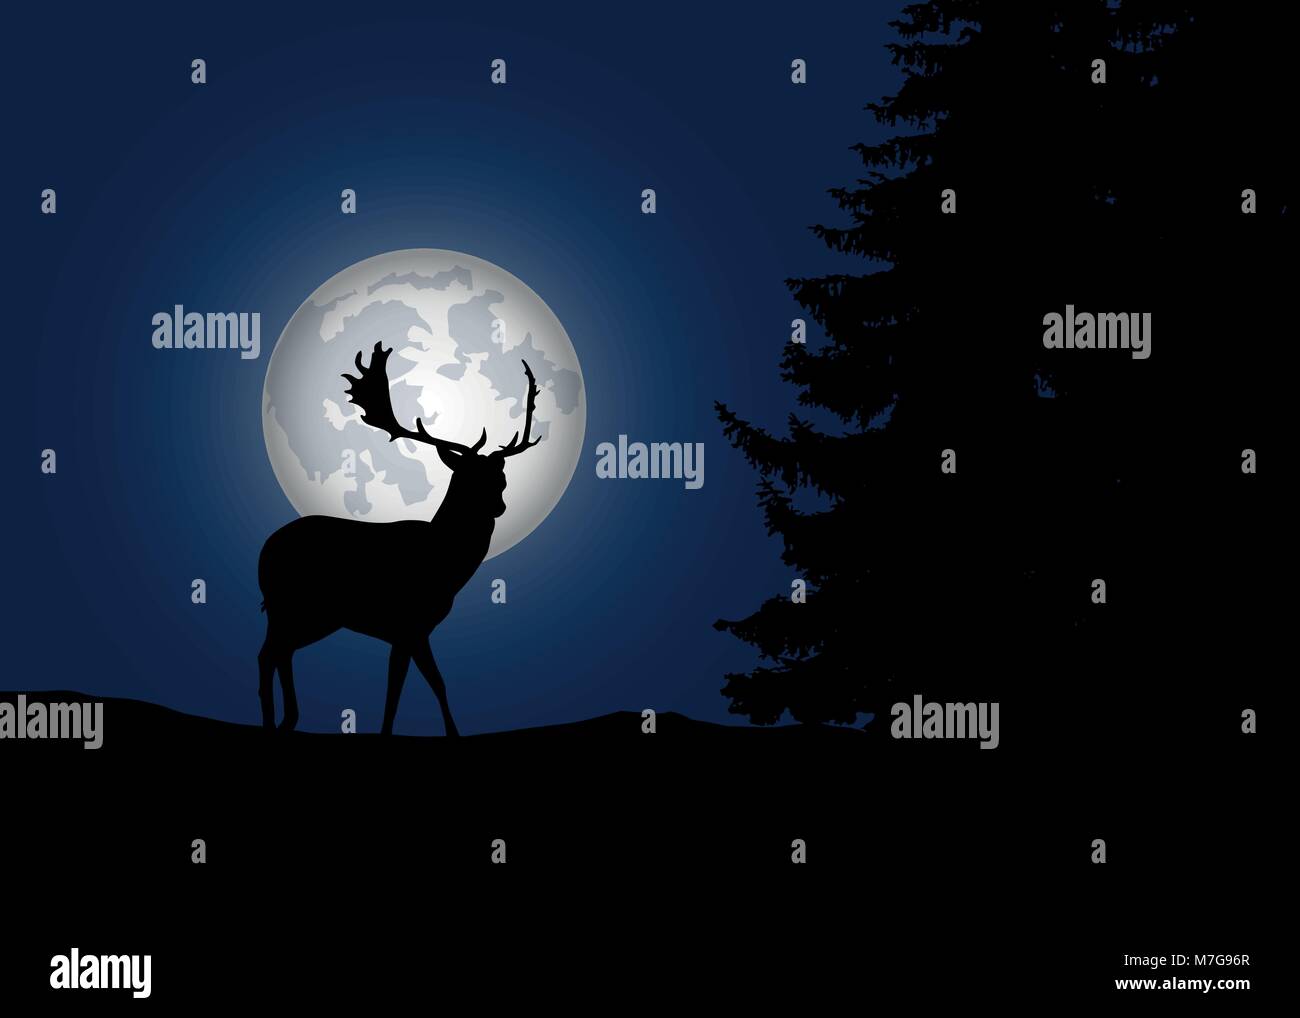 Rehe im Wald mit Nadelbäumen mit Mond und blauen Nachthimmel Hintergrund-Vektor Stock Vektor